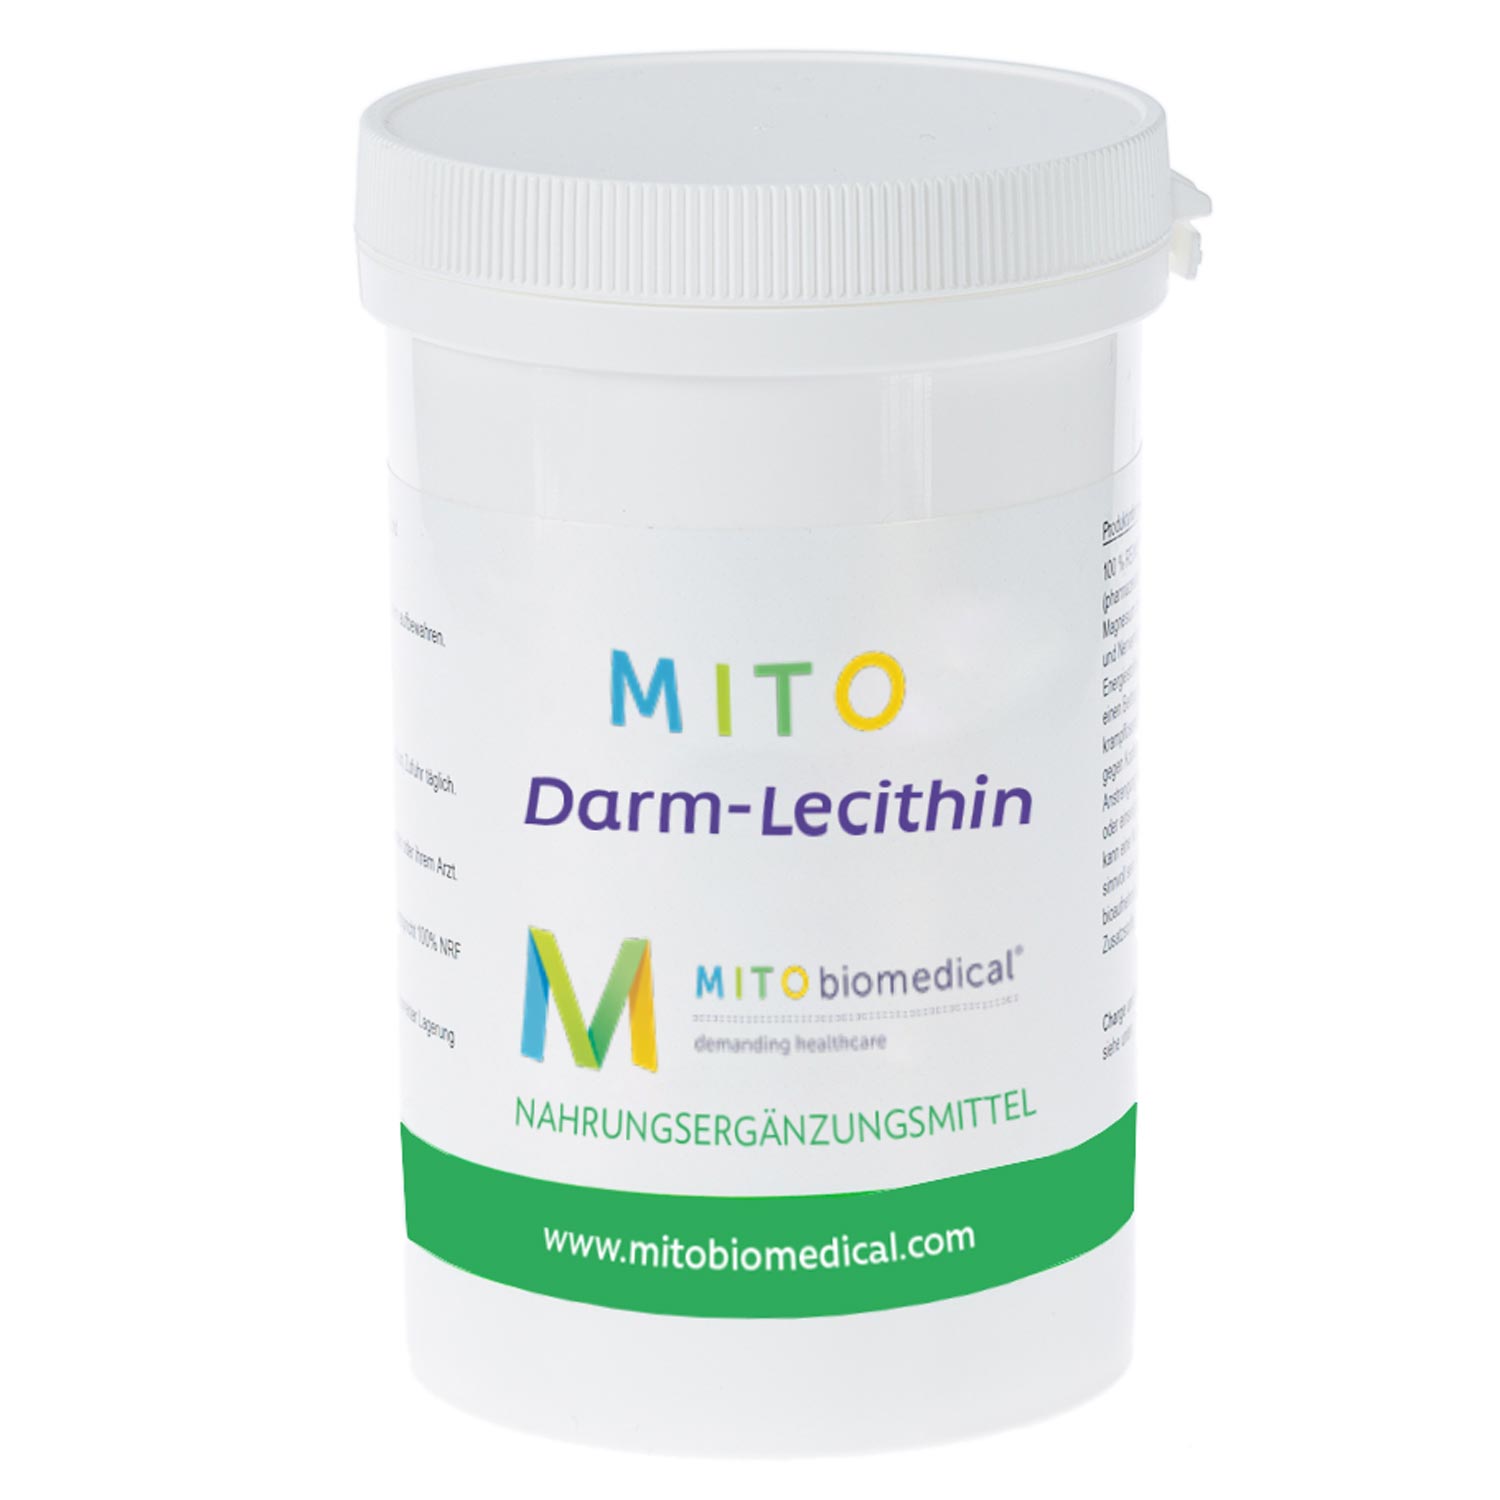 MITODarm-Lecithin von Mitobiomedical - 100g